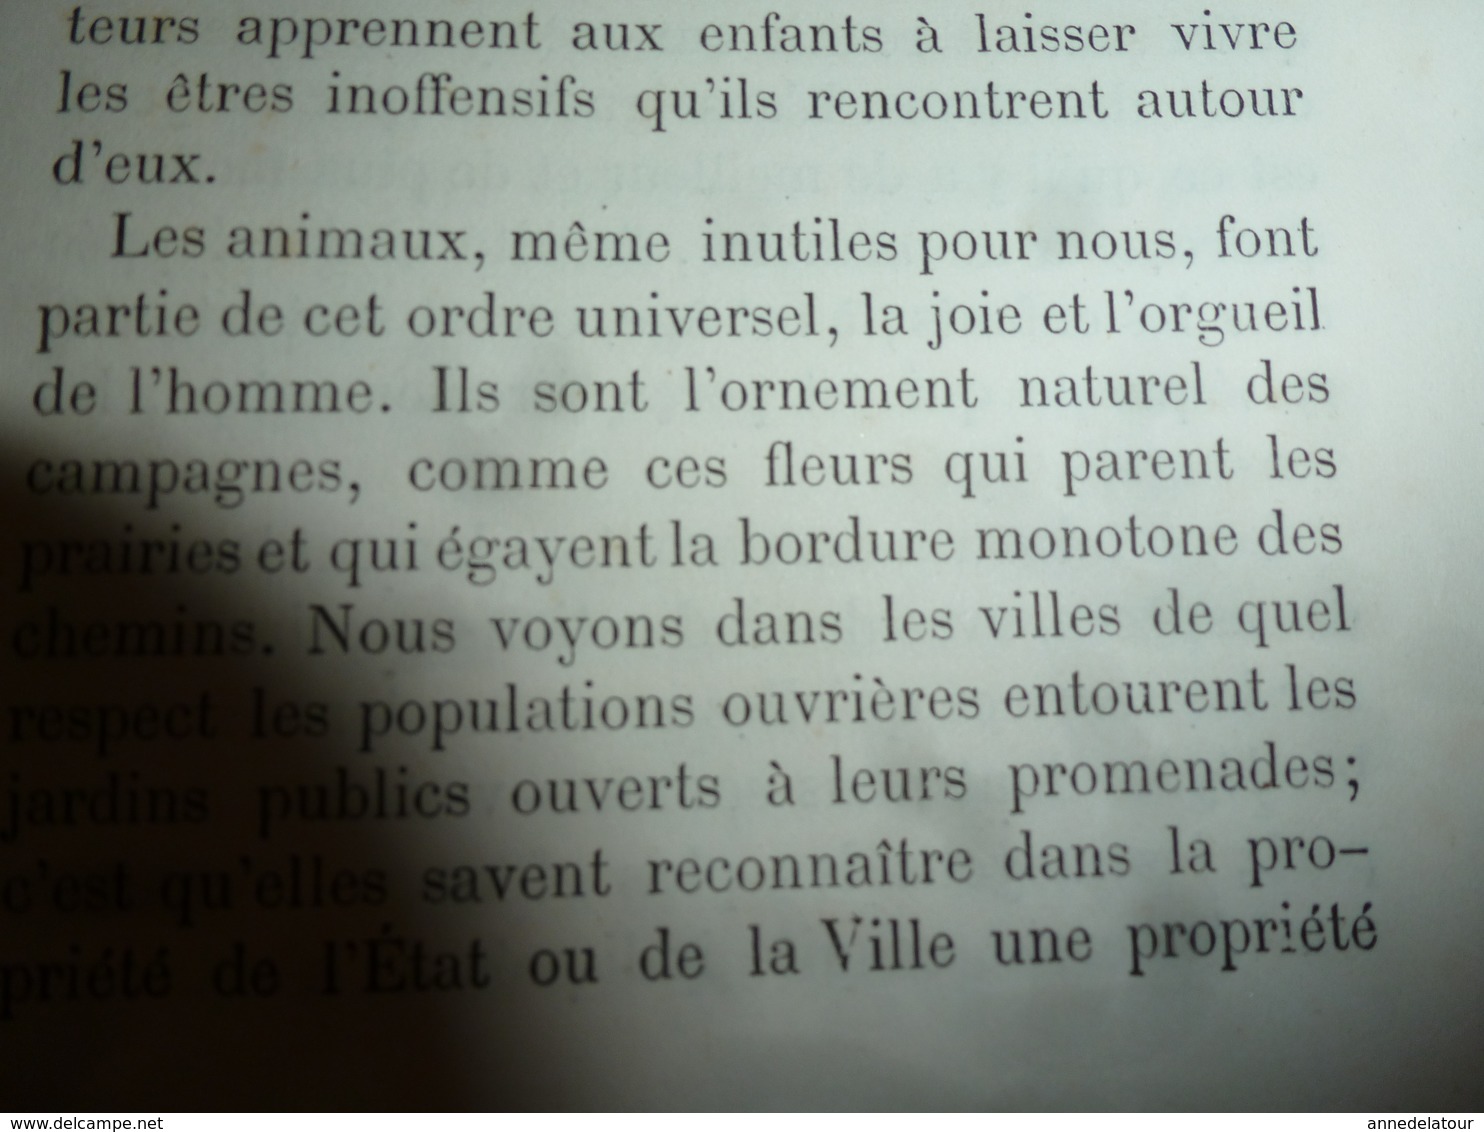 1878 Catalogue raisonné des ANIMAUX UTILES - par Maurice Girard docteur ès Sciences Naturelles